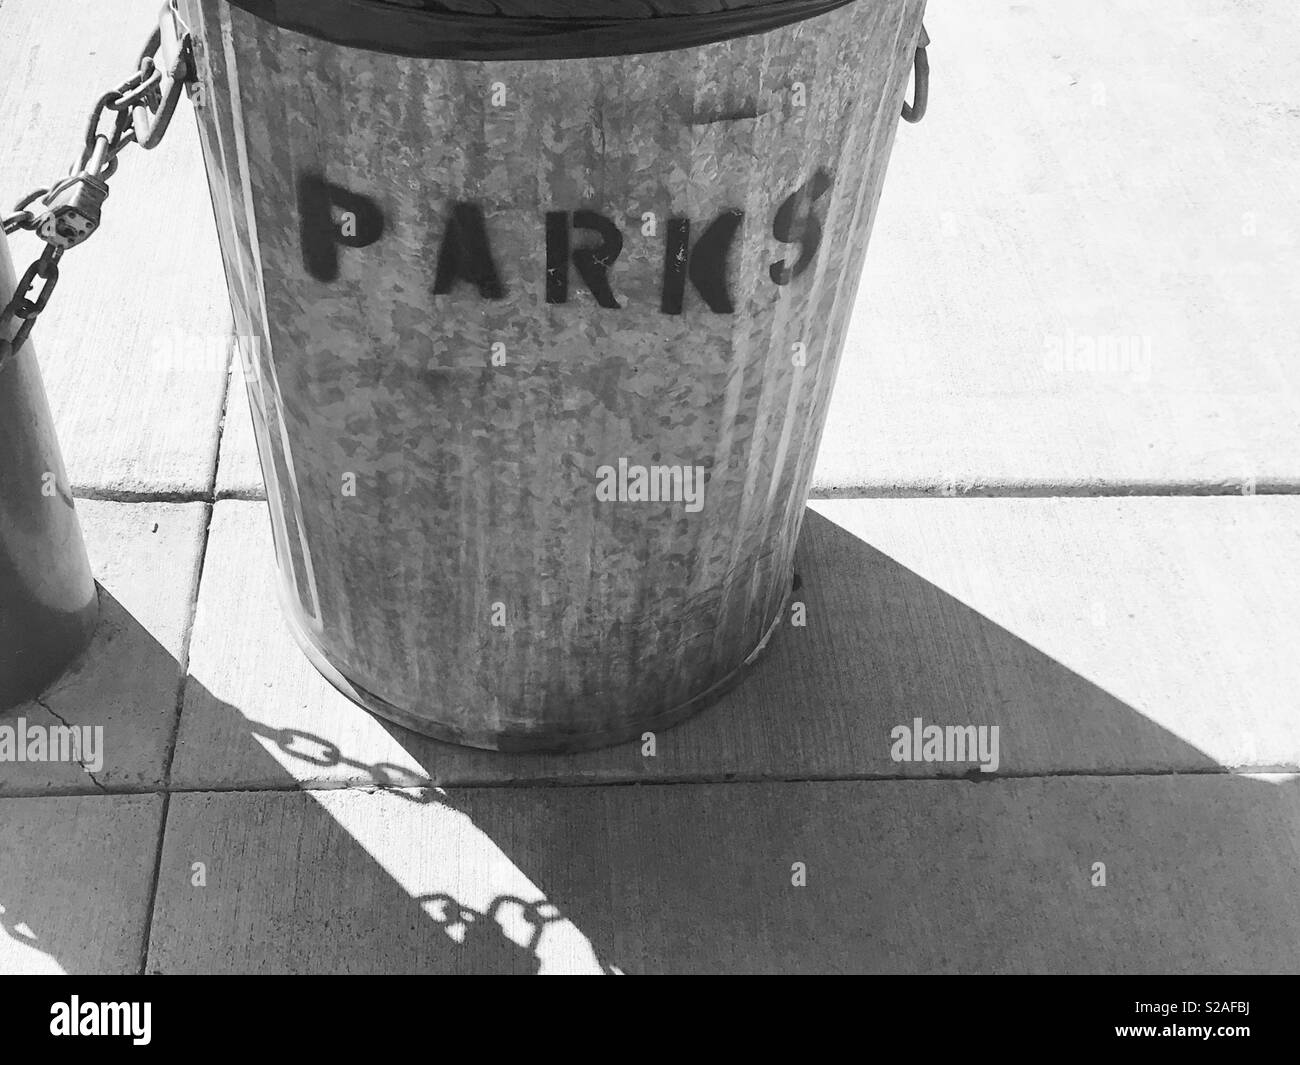 Mülleimer im Park - schwarz-weiss Fotografie - Metall Mülleimer Spray auf der Vorderseite gemalt mit dem Wort Parks - Schatten Fotografie Stockfoto